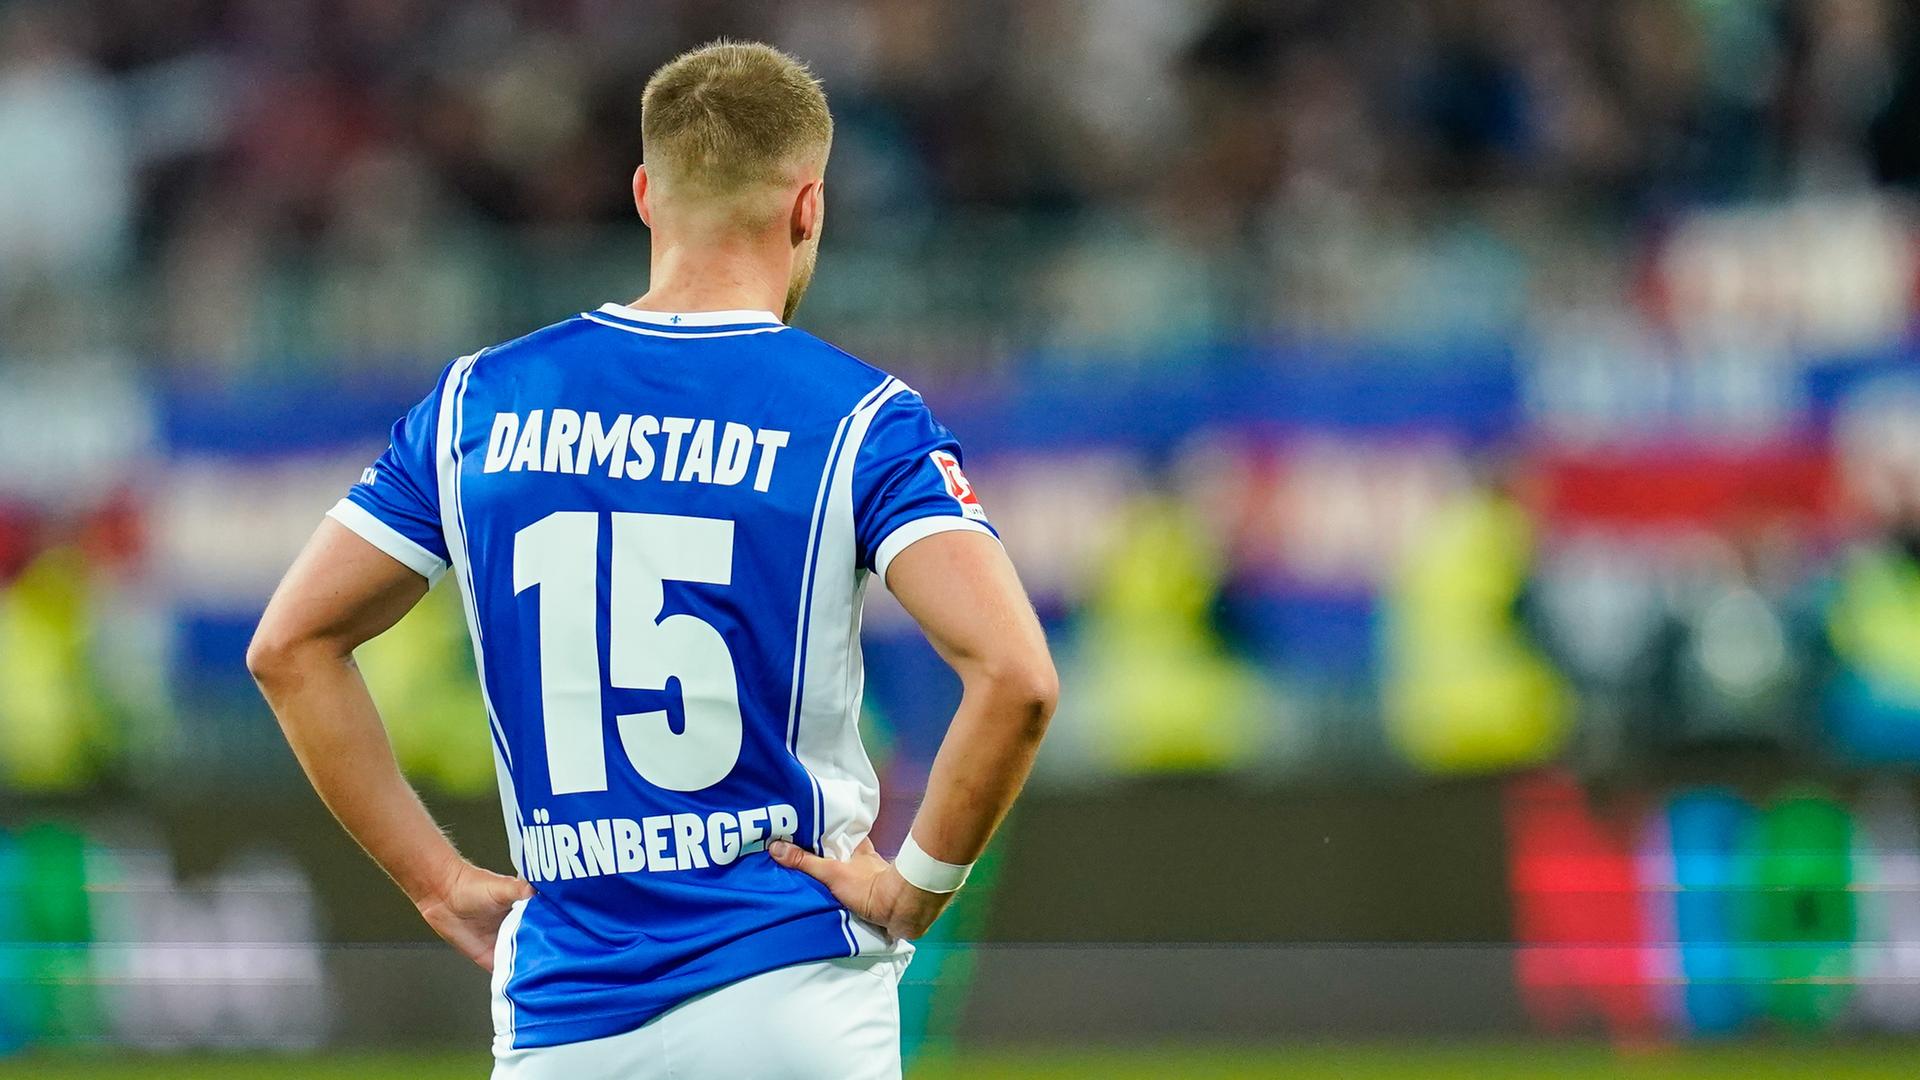 Darmstadts Fabian Nürnberger steht auf dem Spielfeld, er ist von hinten zu sehen, wie er die Arme in die Seiten stemmt.